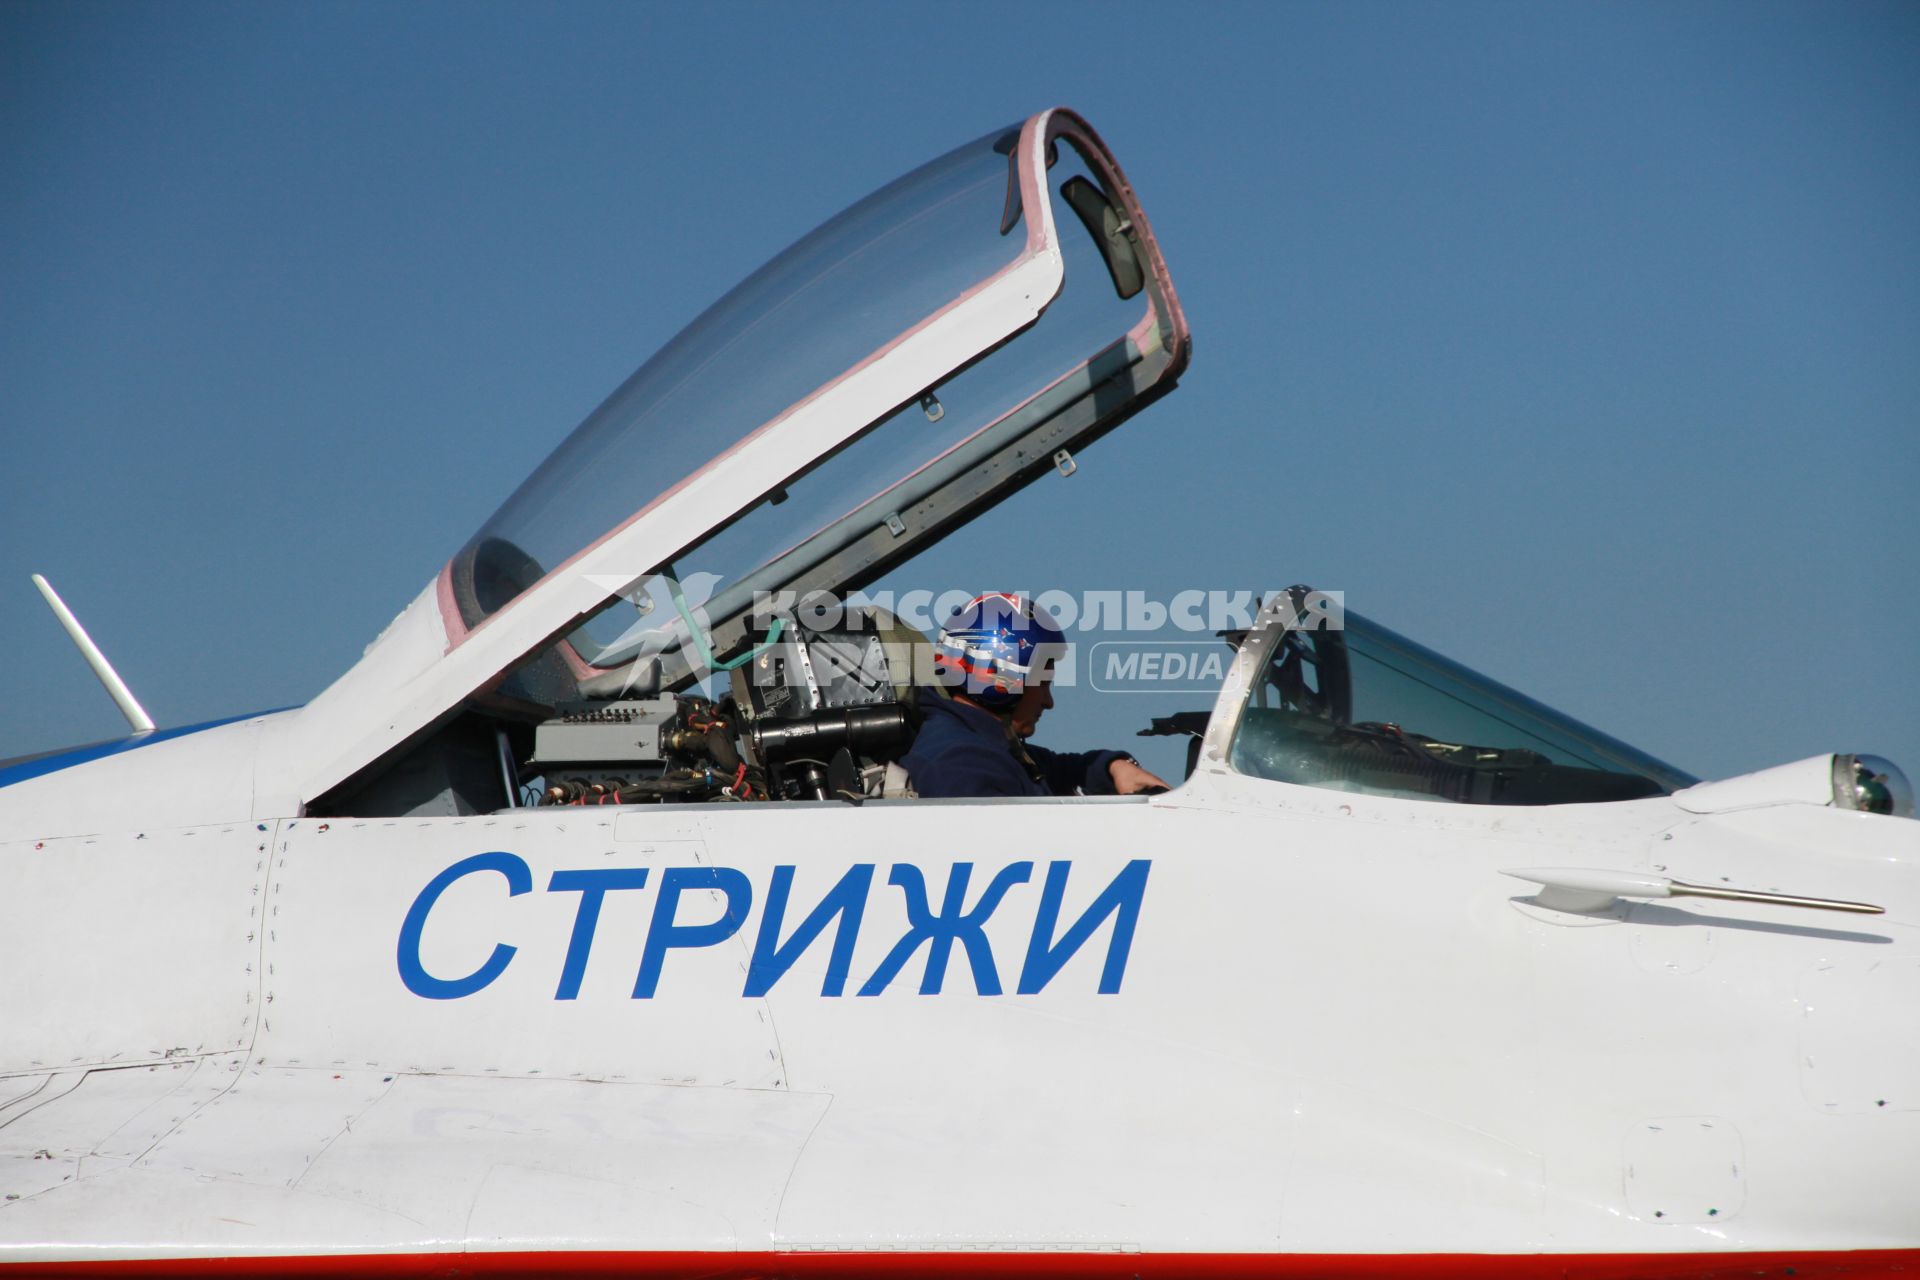 Барнаул. Пилотажная группа `Стрижи`. Самолет Миг-29 на взлетной полосе.